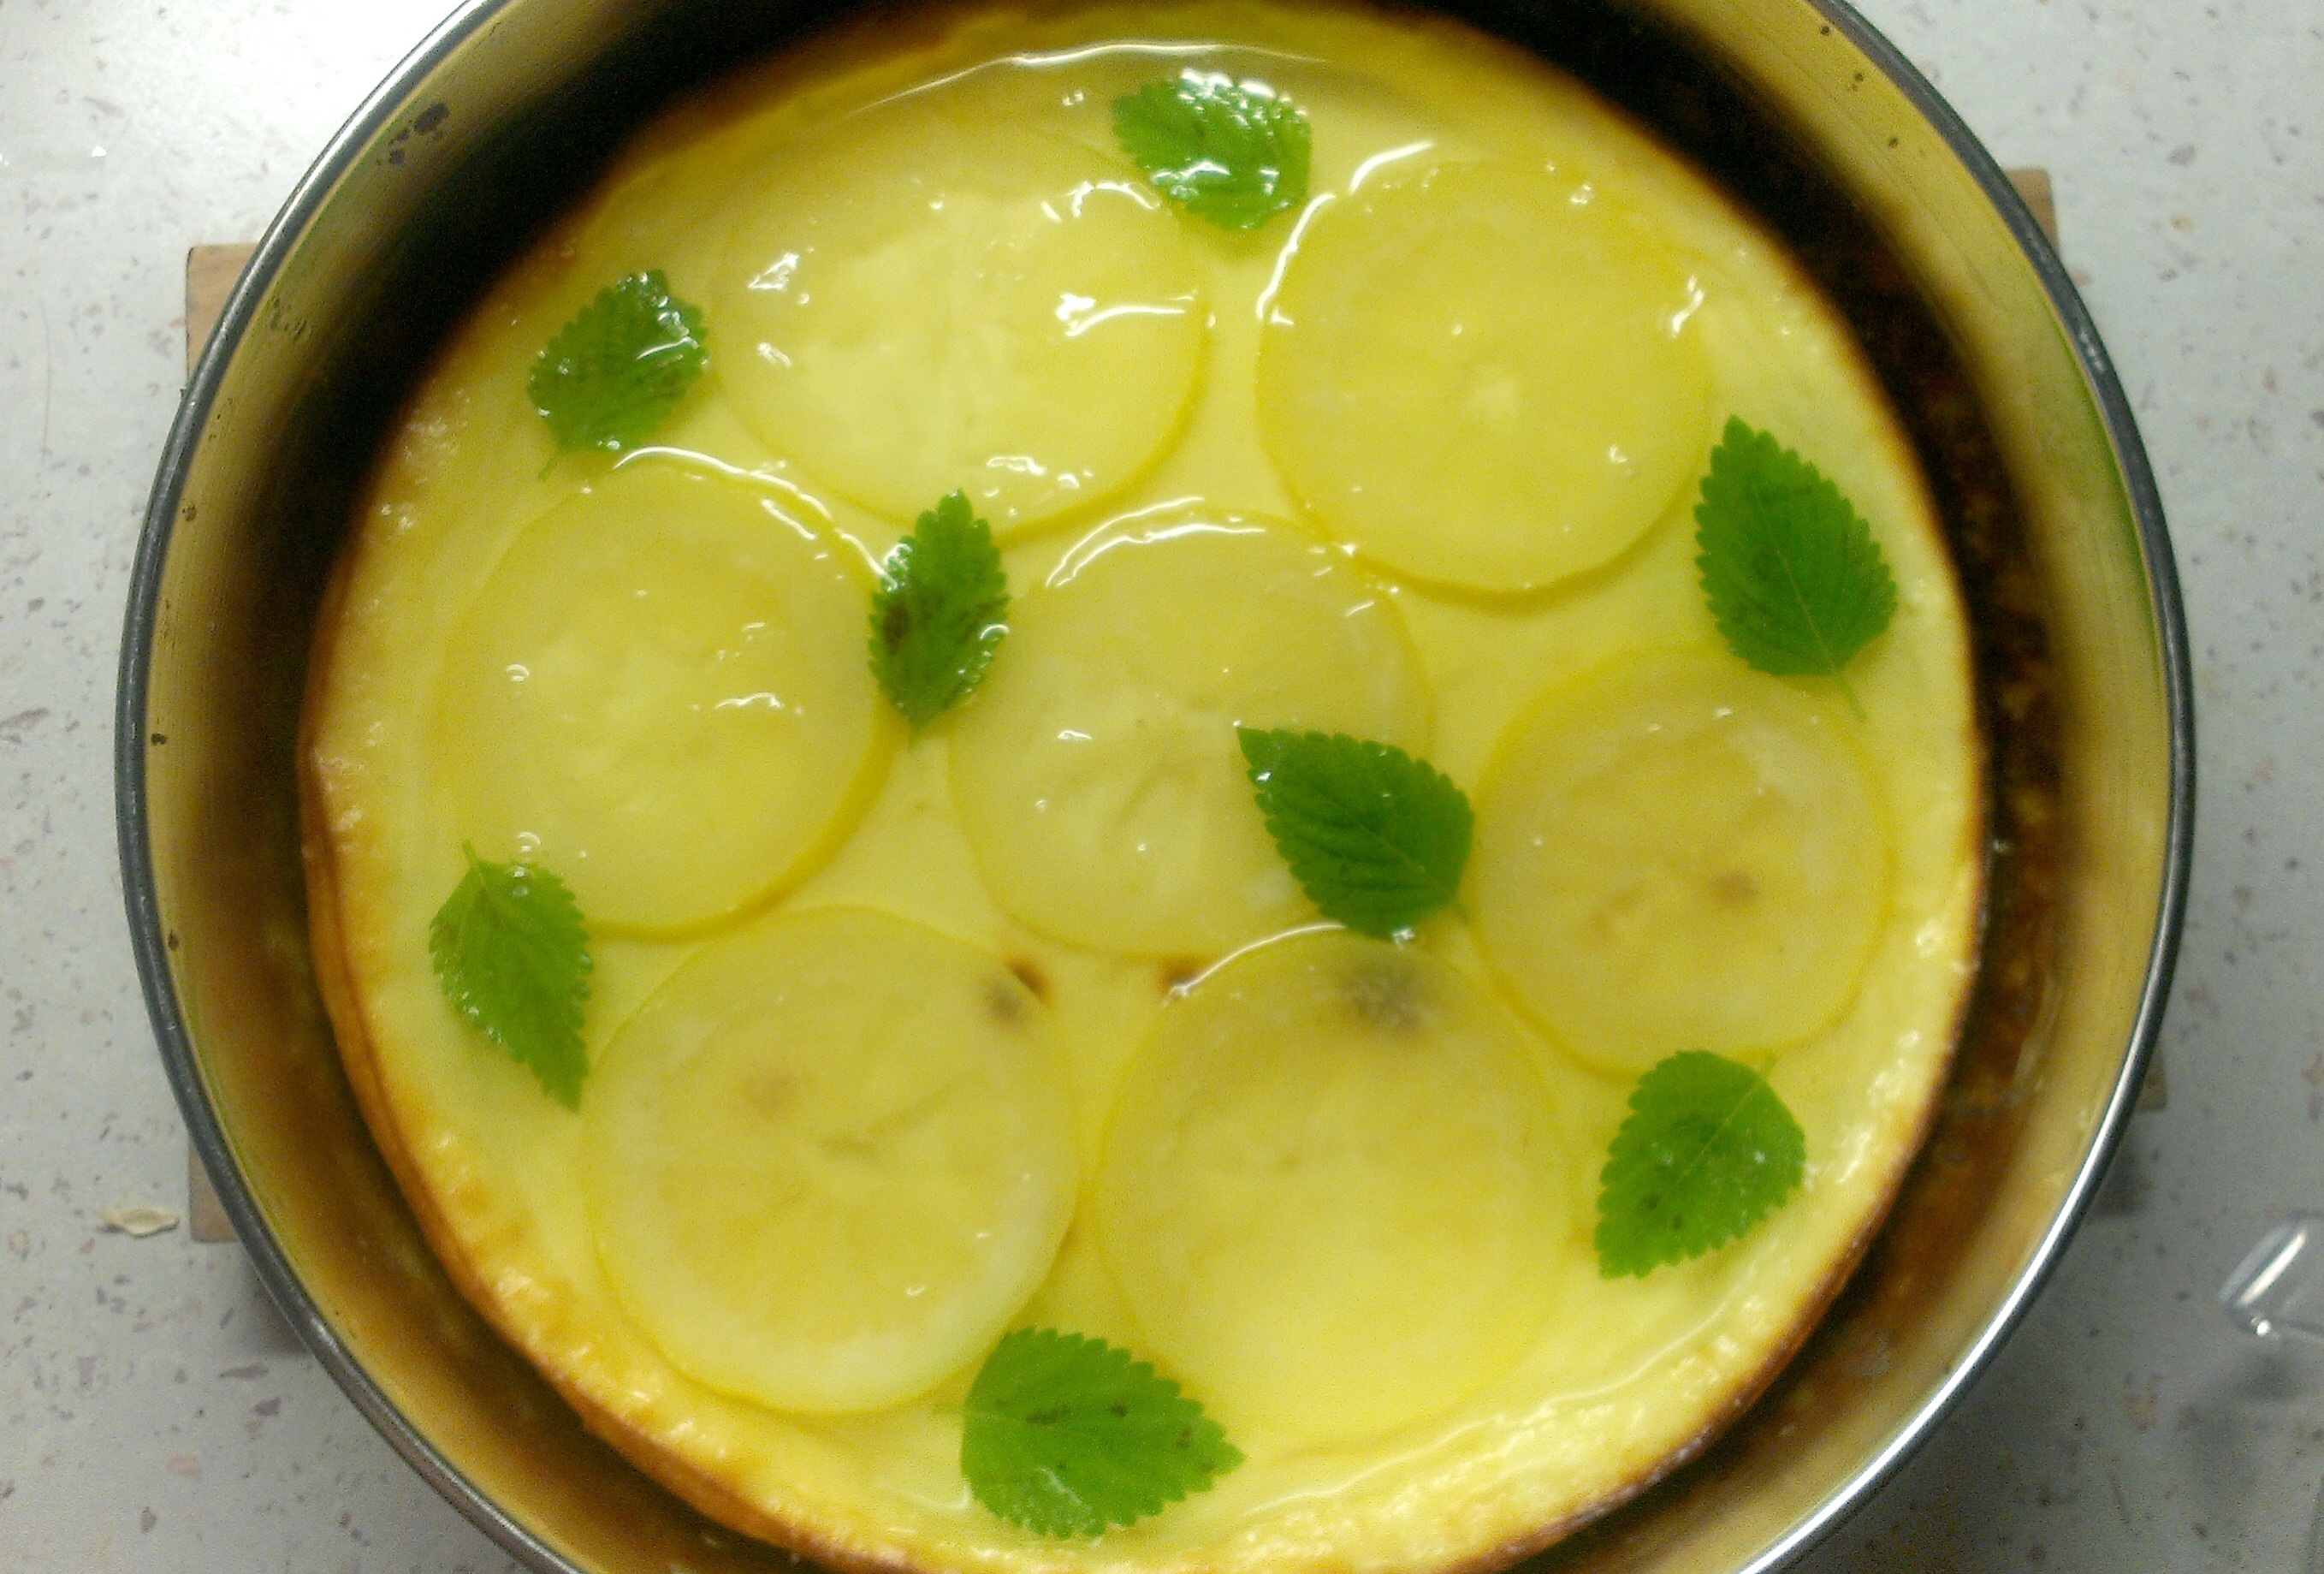 Cheesecake s citronovým želé